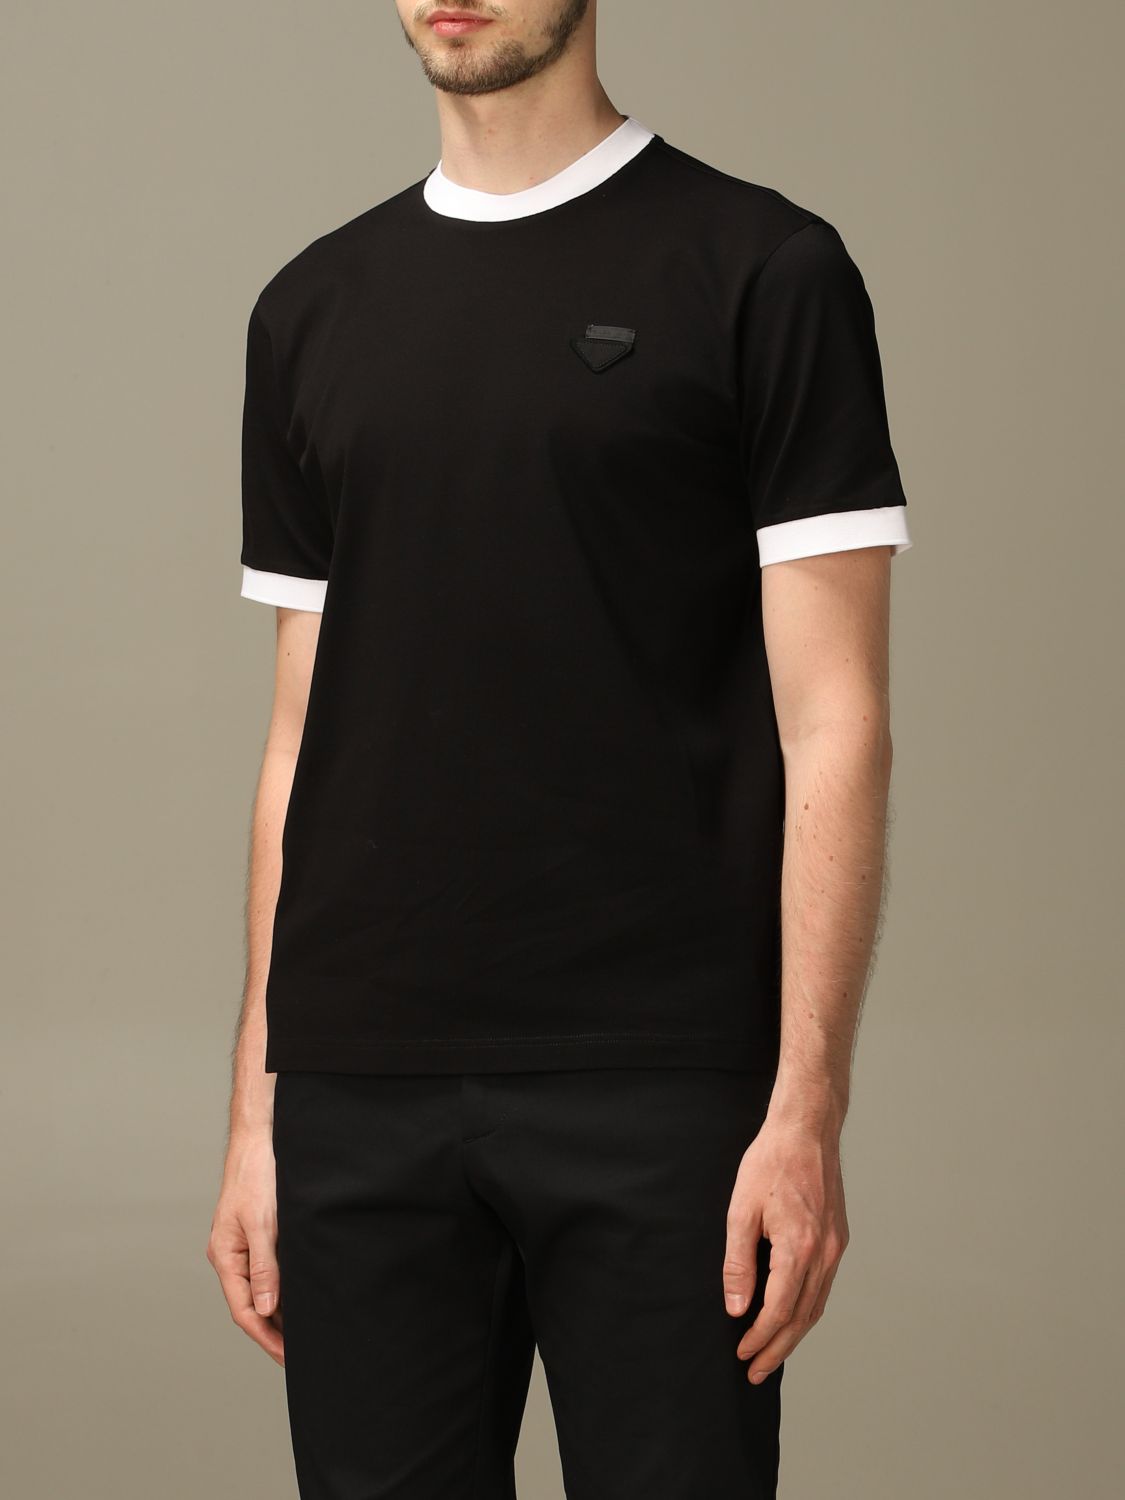 PRADA: pique cotton T-shirt with triangular logo | T-Shirt Prada Men